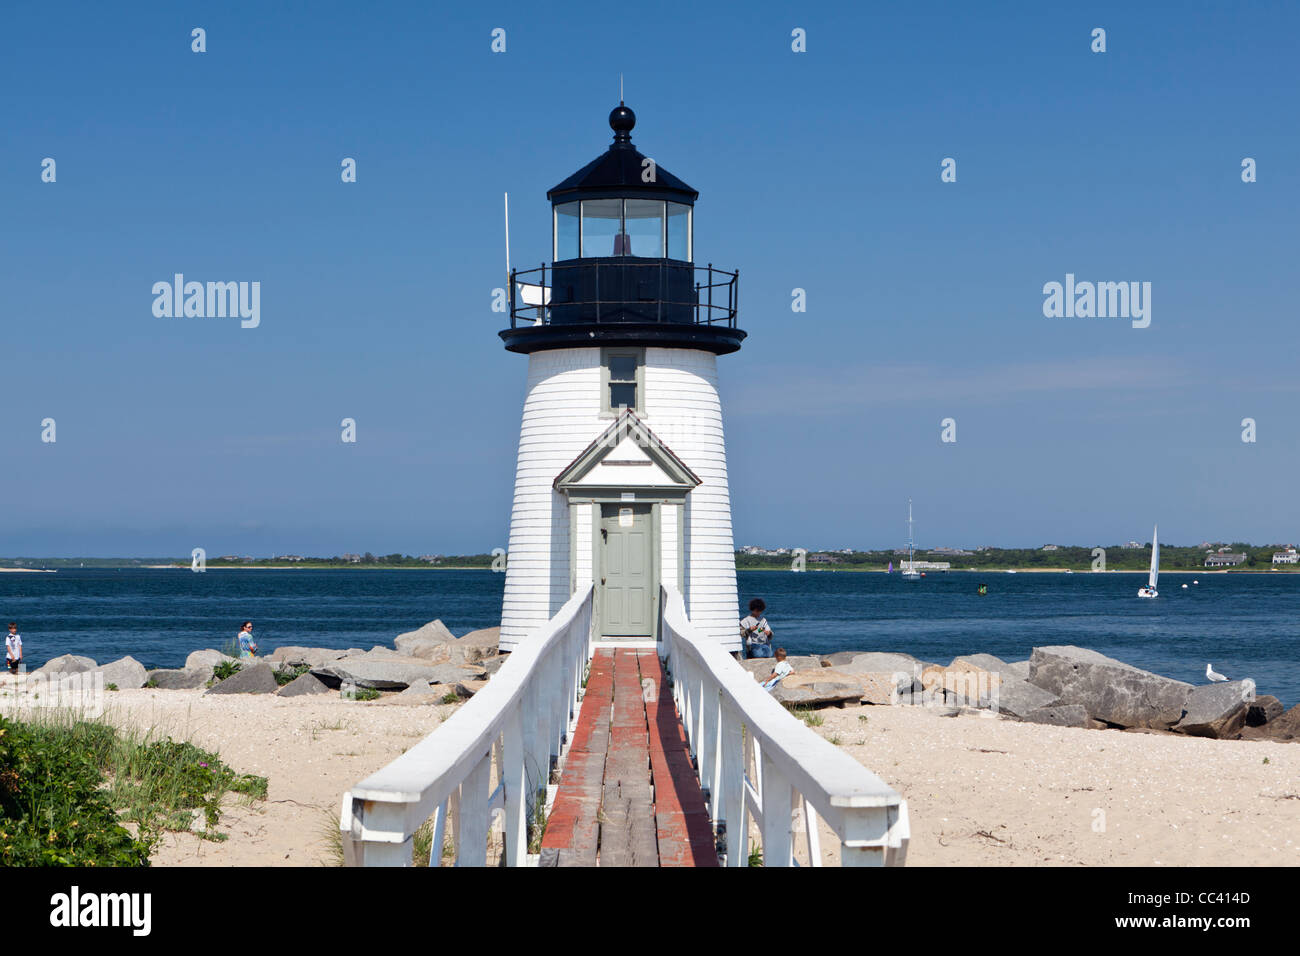 Le phare de l'île de Nantucket Brant Massachusetts New England USA Banque D'Images